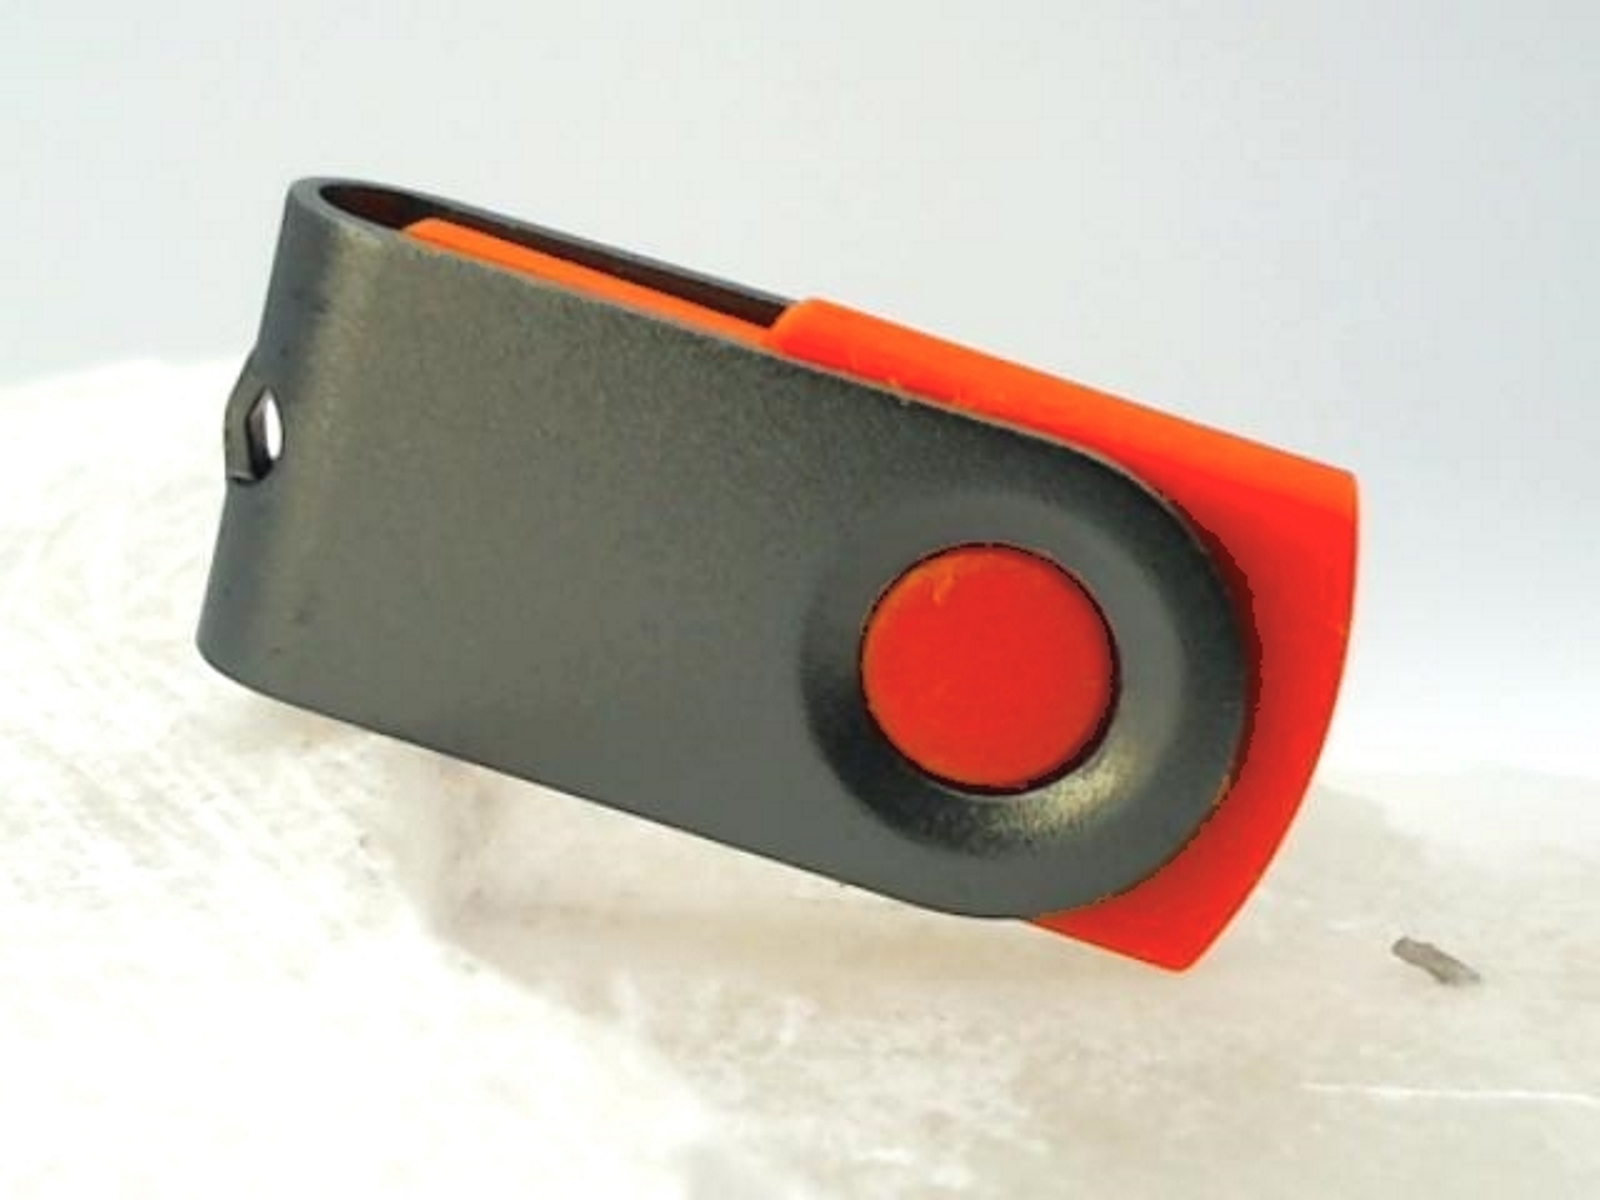 USB GERMANY ® MINI-SWIVEL (Rot-Graumetall, 4 USB-Stick GB)